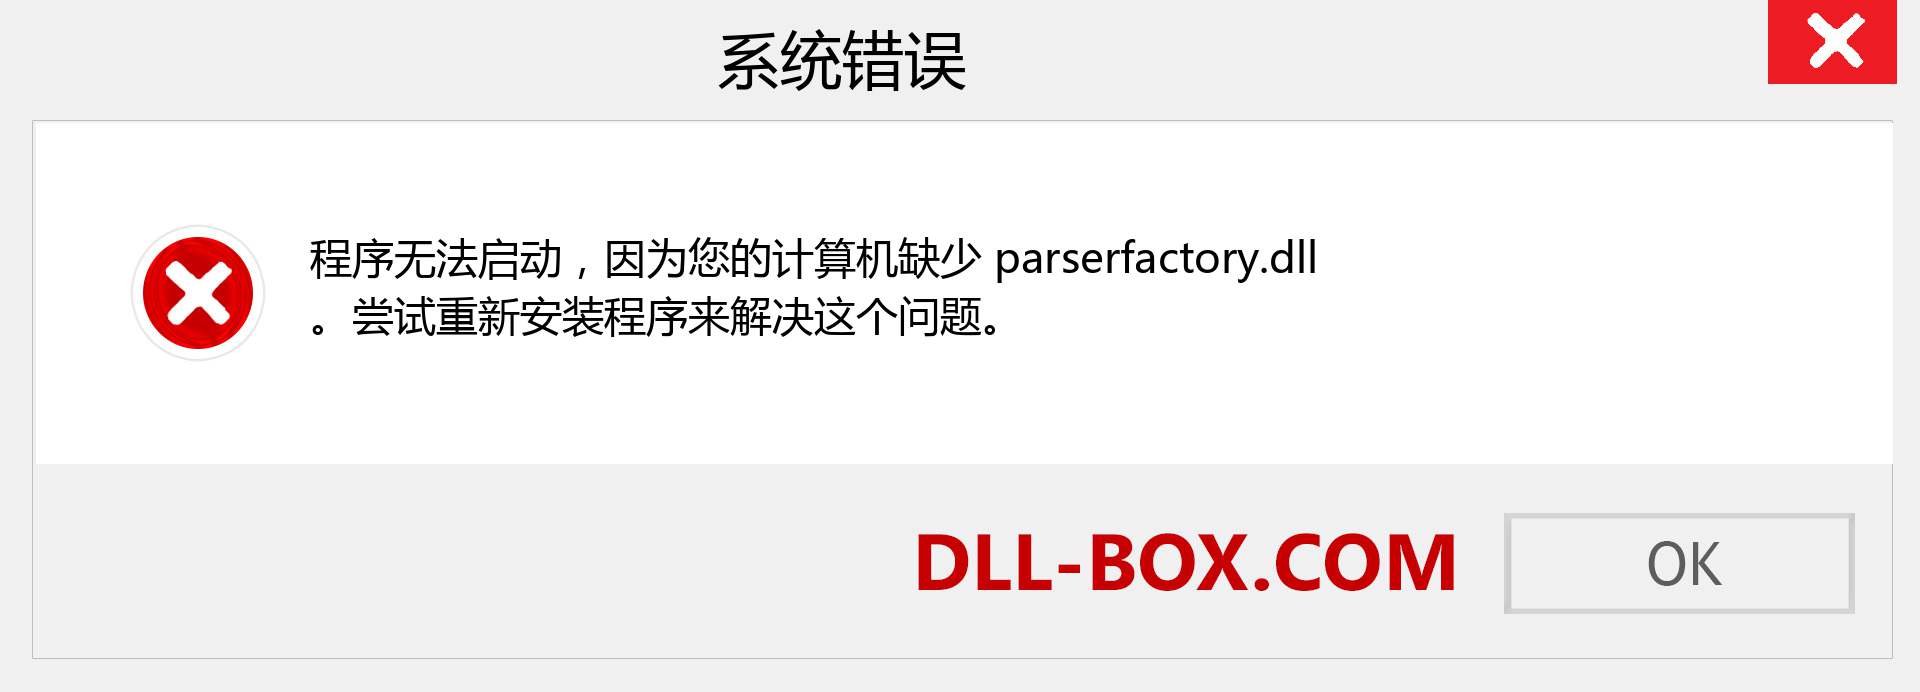 parserfactory.dll 文件丢失？。 适用于 Windows 7、8、10 的下载 - 修复 Windows、照片、图像上的 parserfactory dll 丢失错误